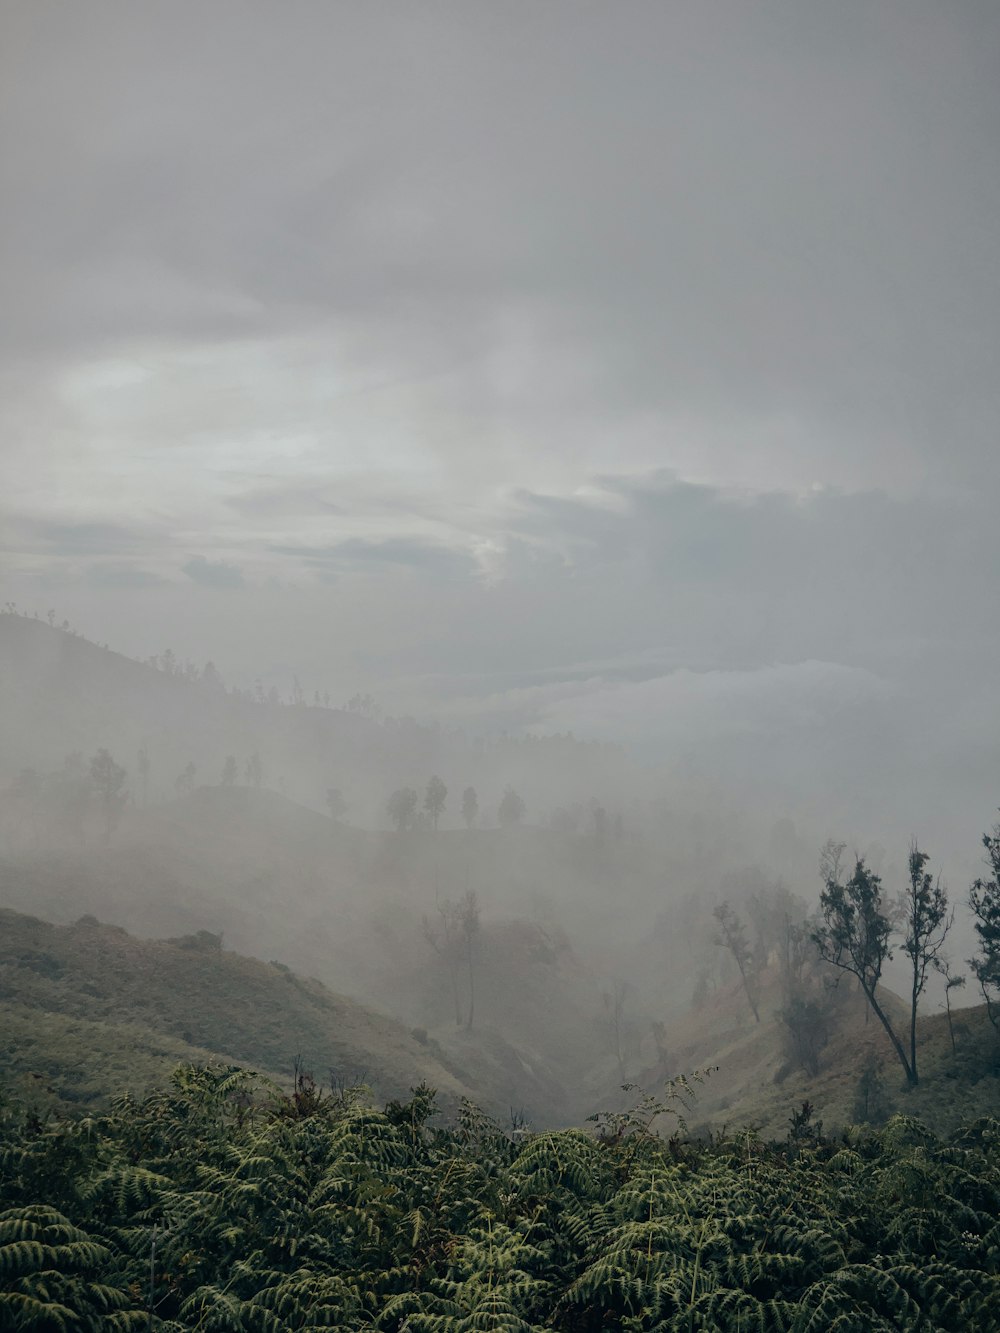 um vale nebuloso com árvores